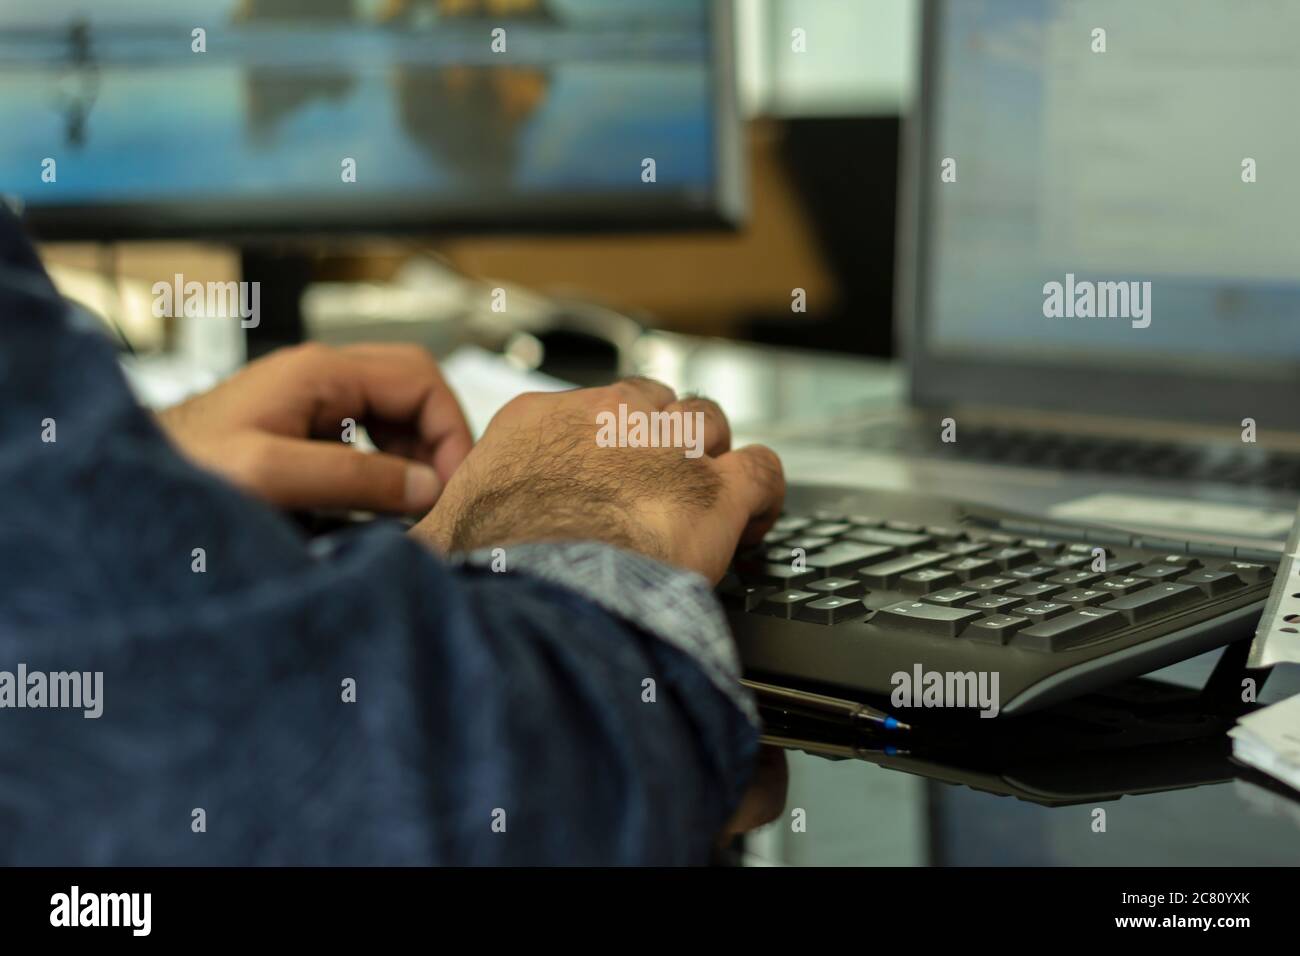 Business Lifestyle ein Mann, der auf dem Laptop tippt. Laptop, Büro, Hand, Bildschirm, Tastatur Stockfoto